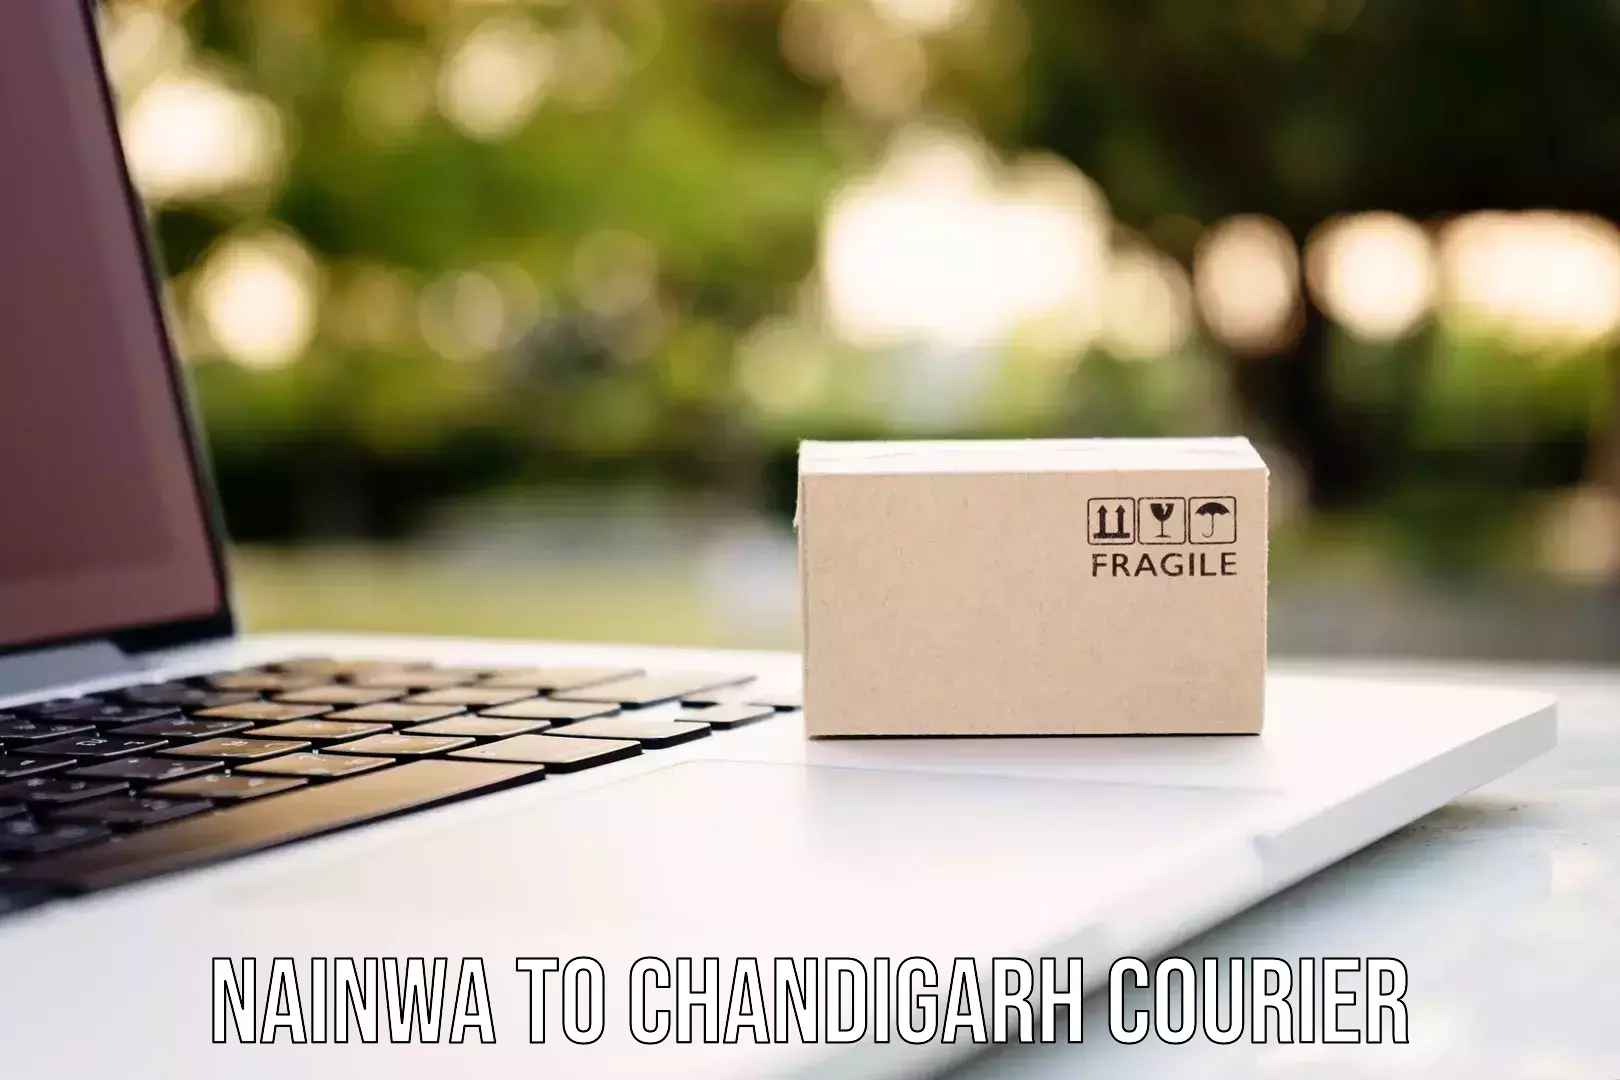 Custom courier packaging Nainwa to Chandigarh